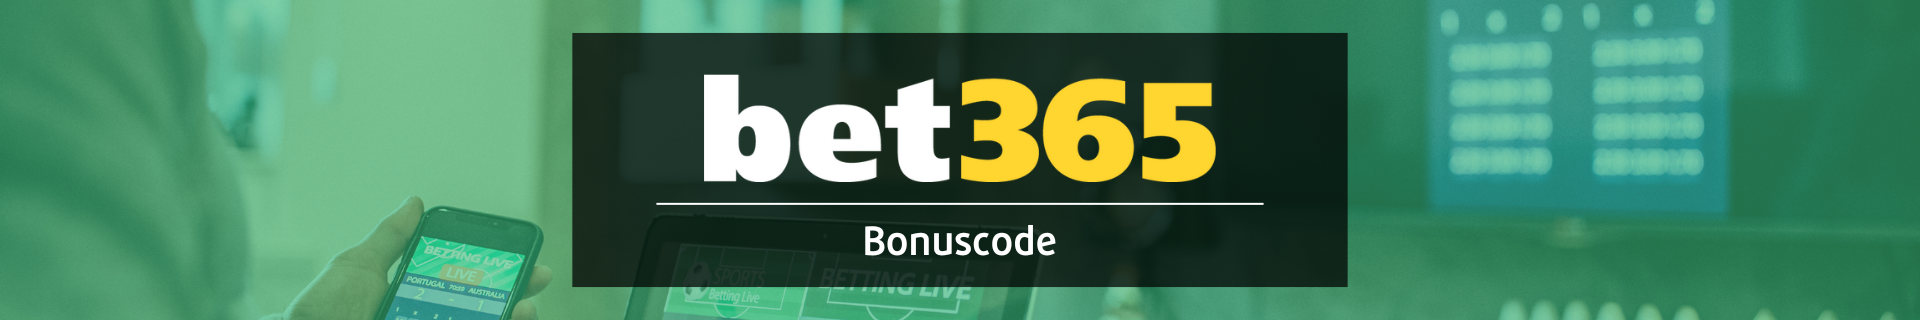 Bet365 bonus code voetbalwedden